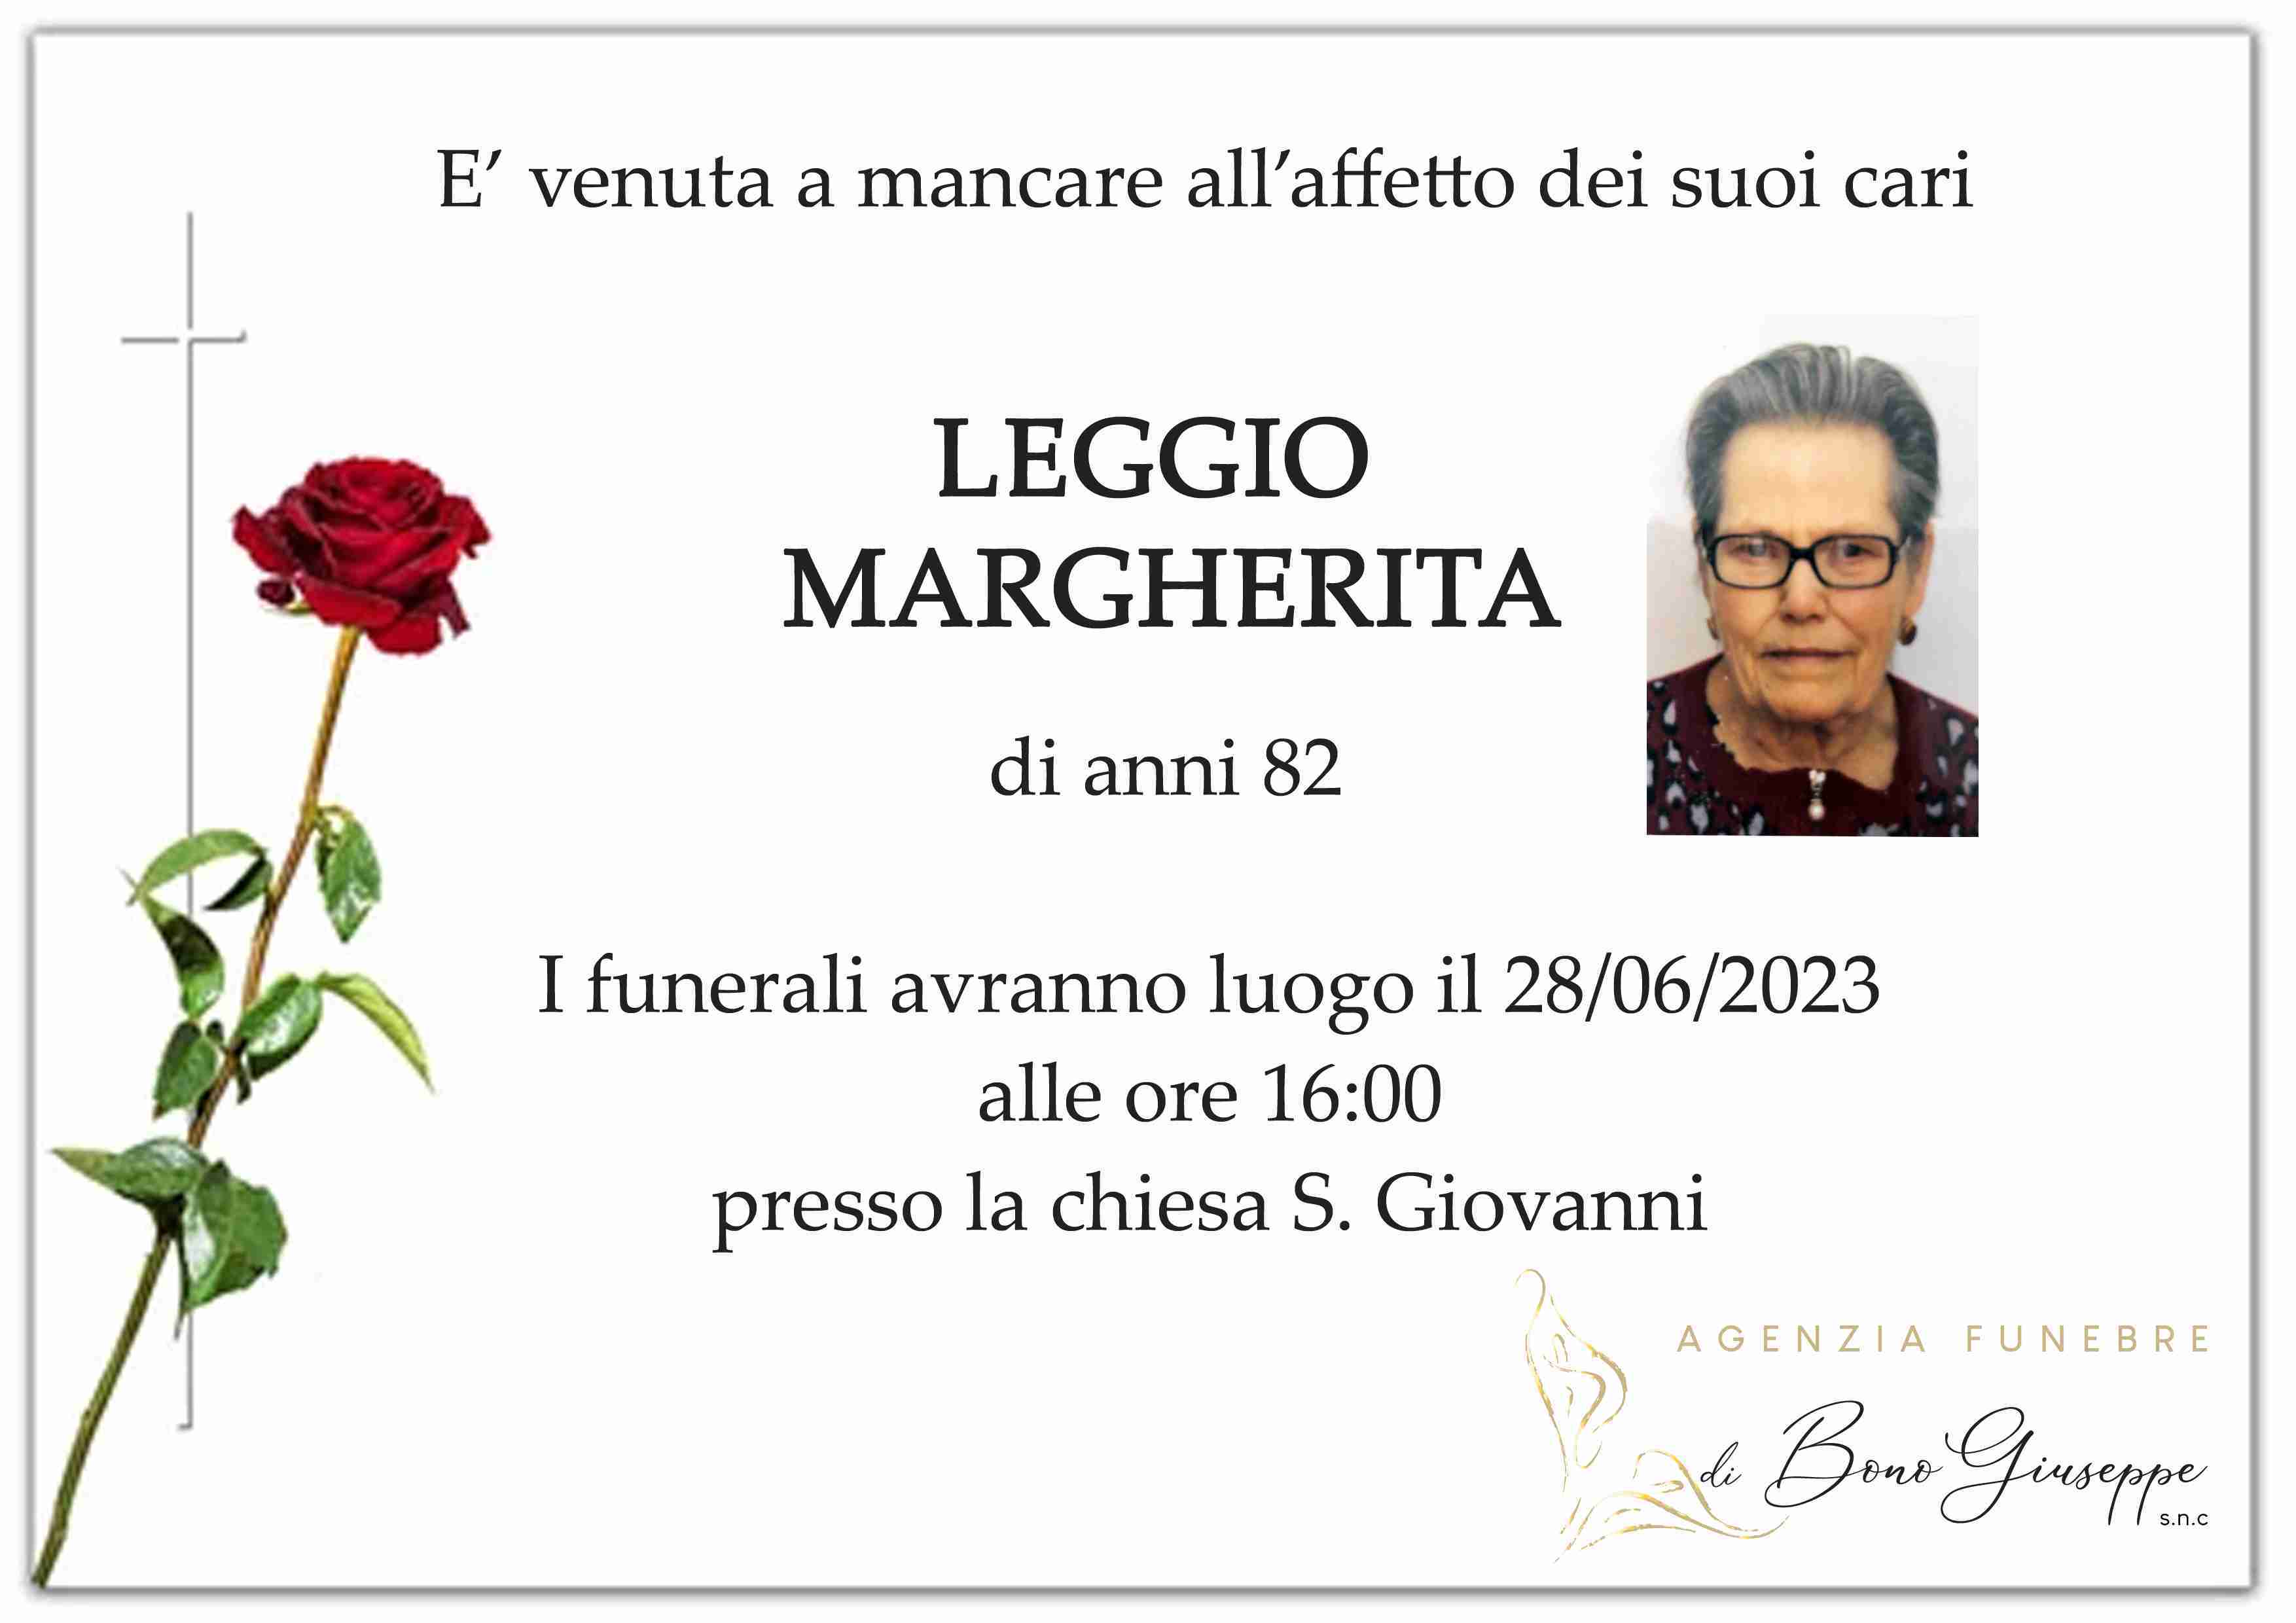 Margherita Leggio